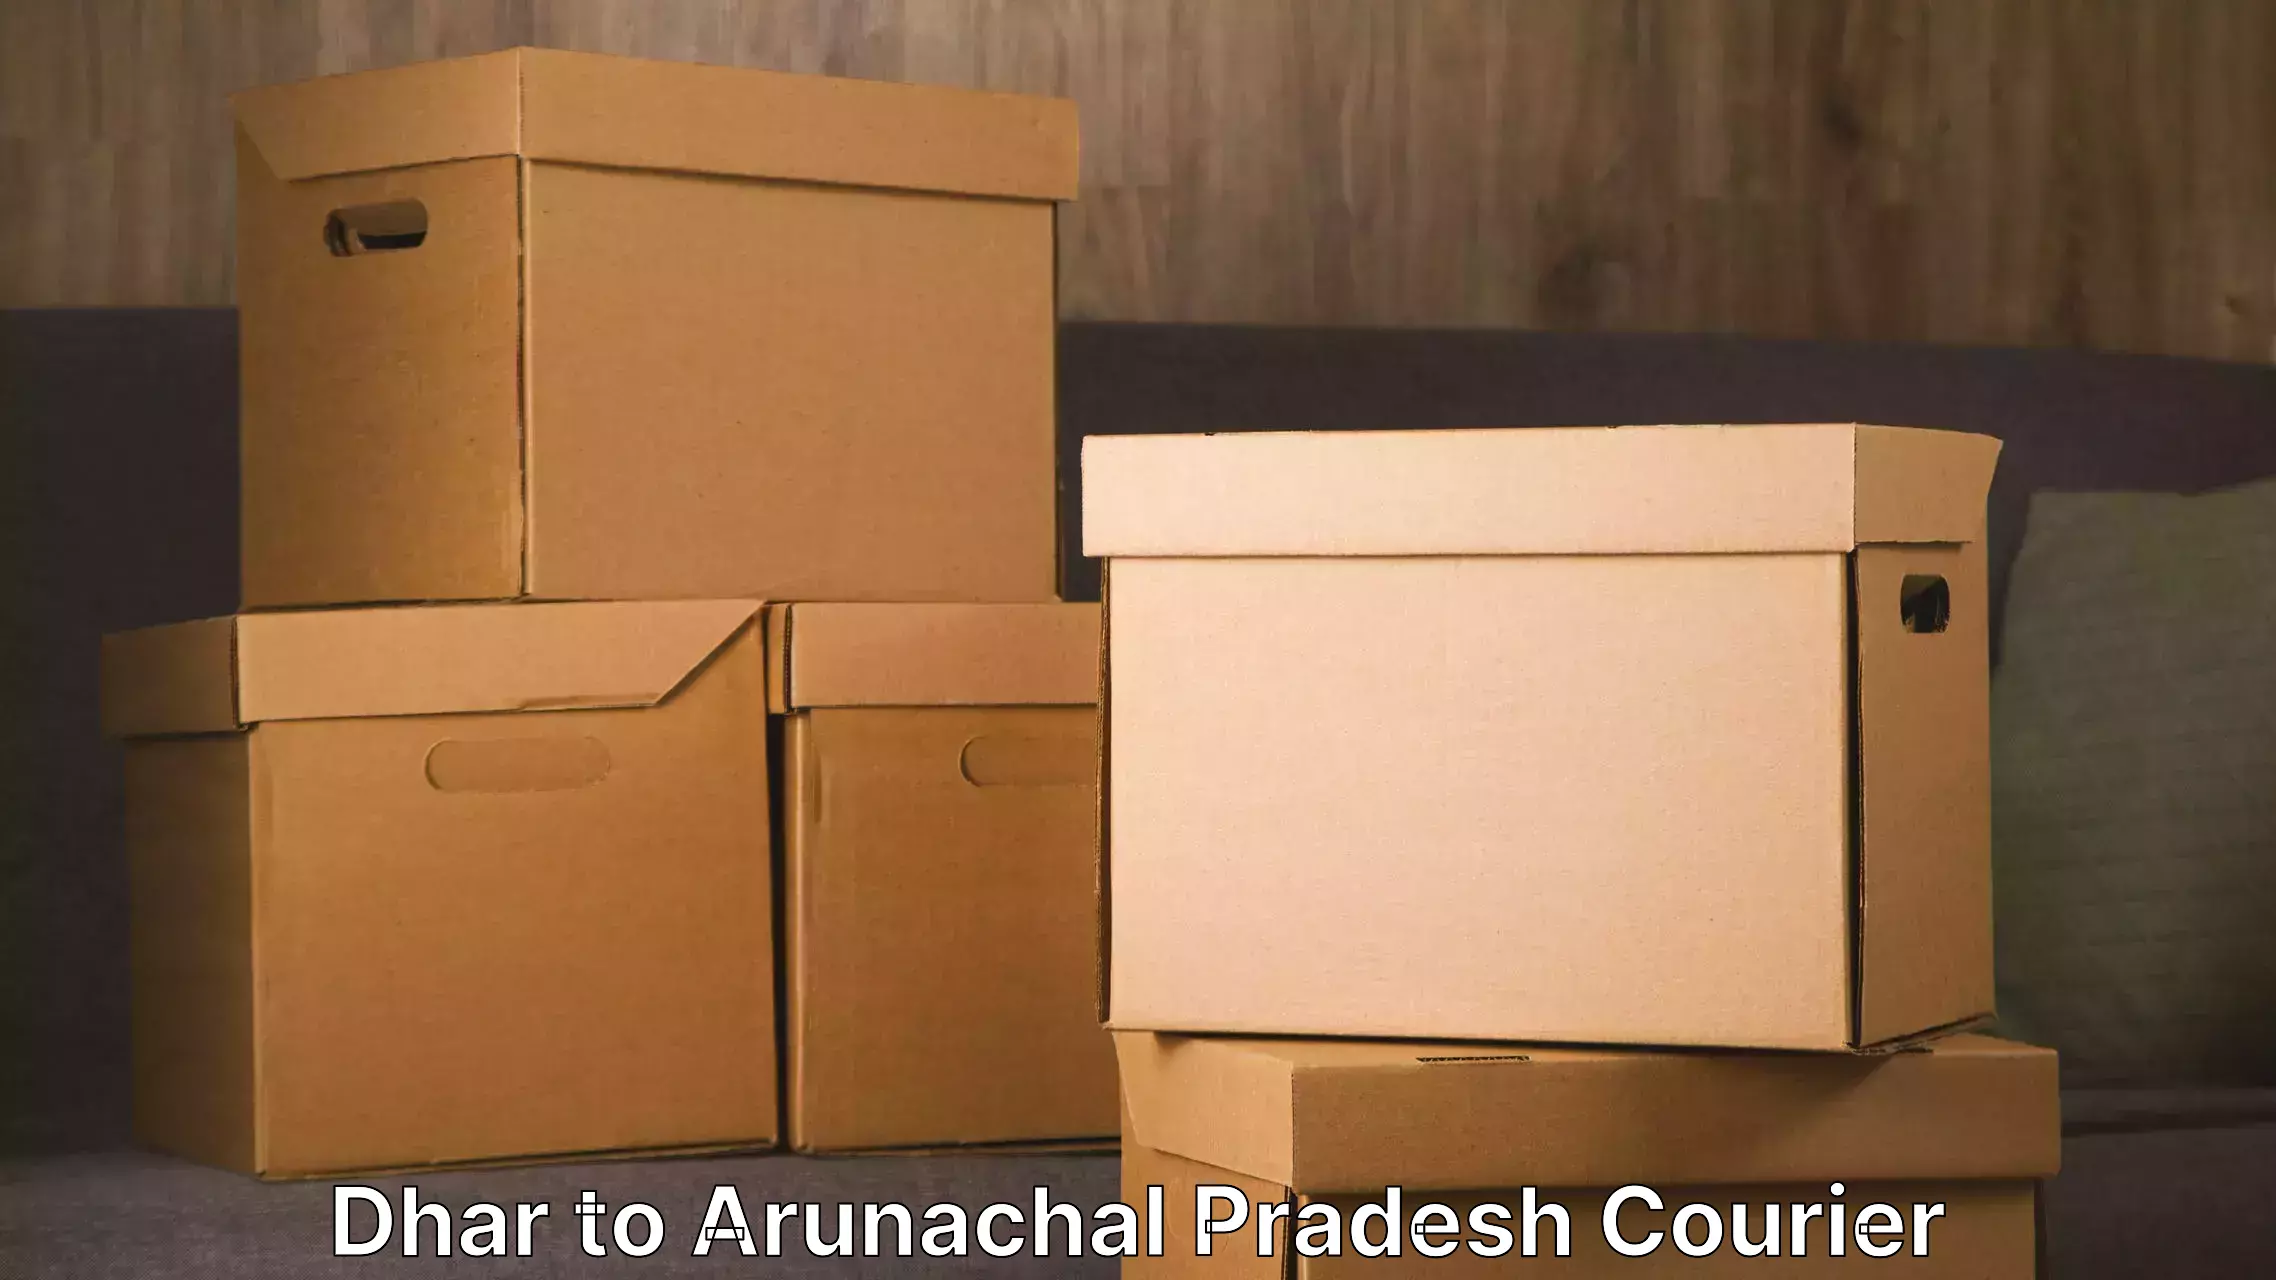 Door-to-door relocation services Dhar to Arunachal Pradesh